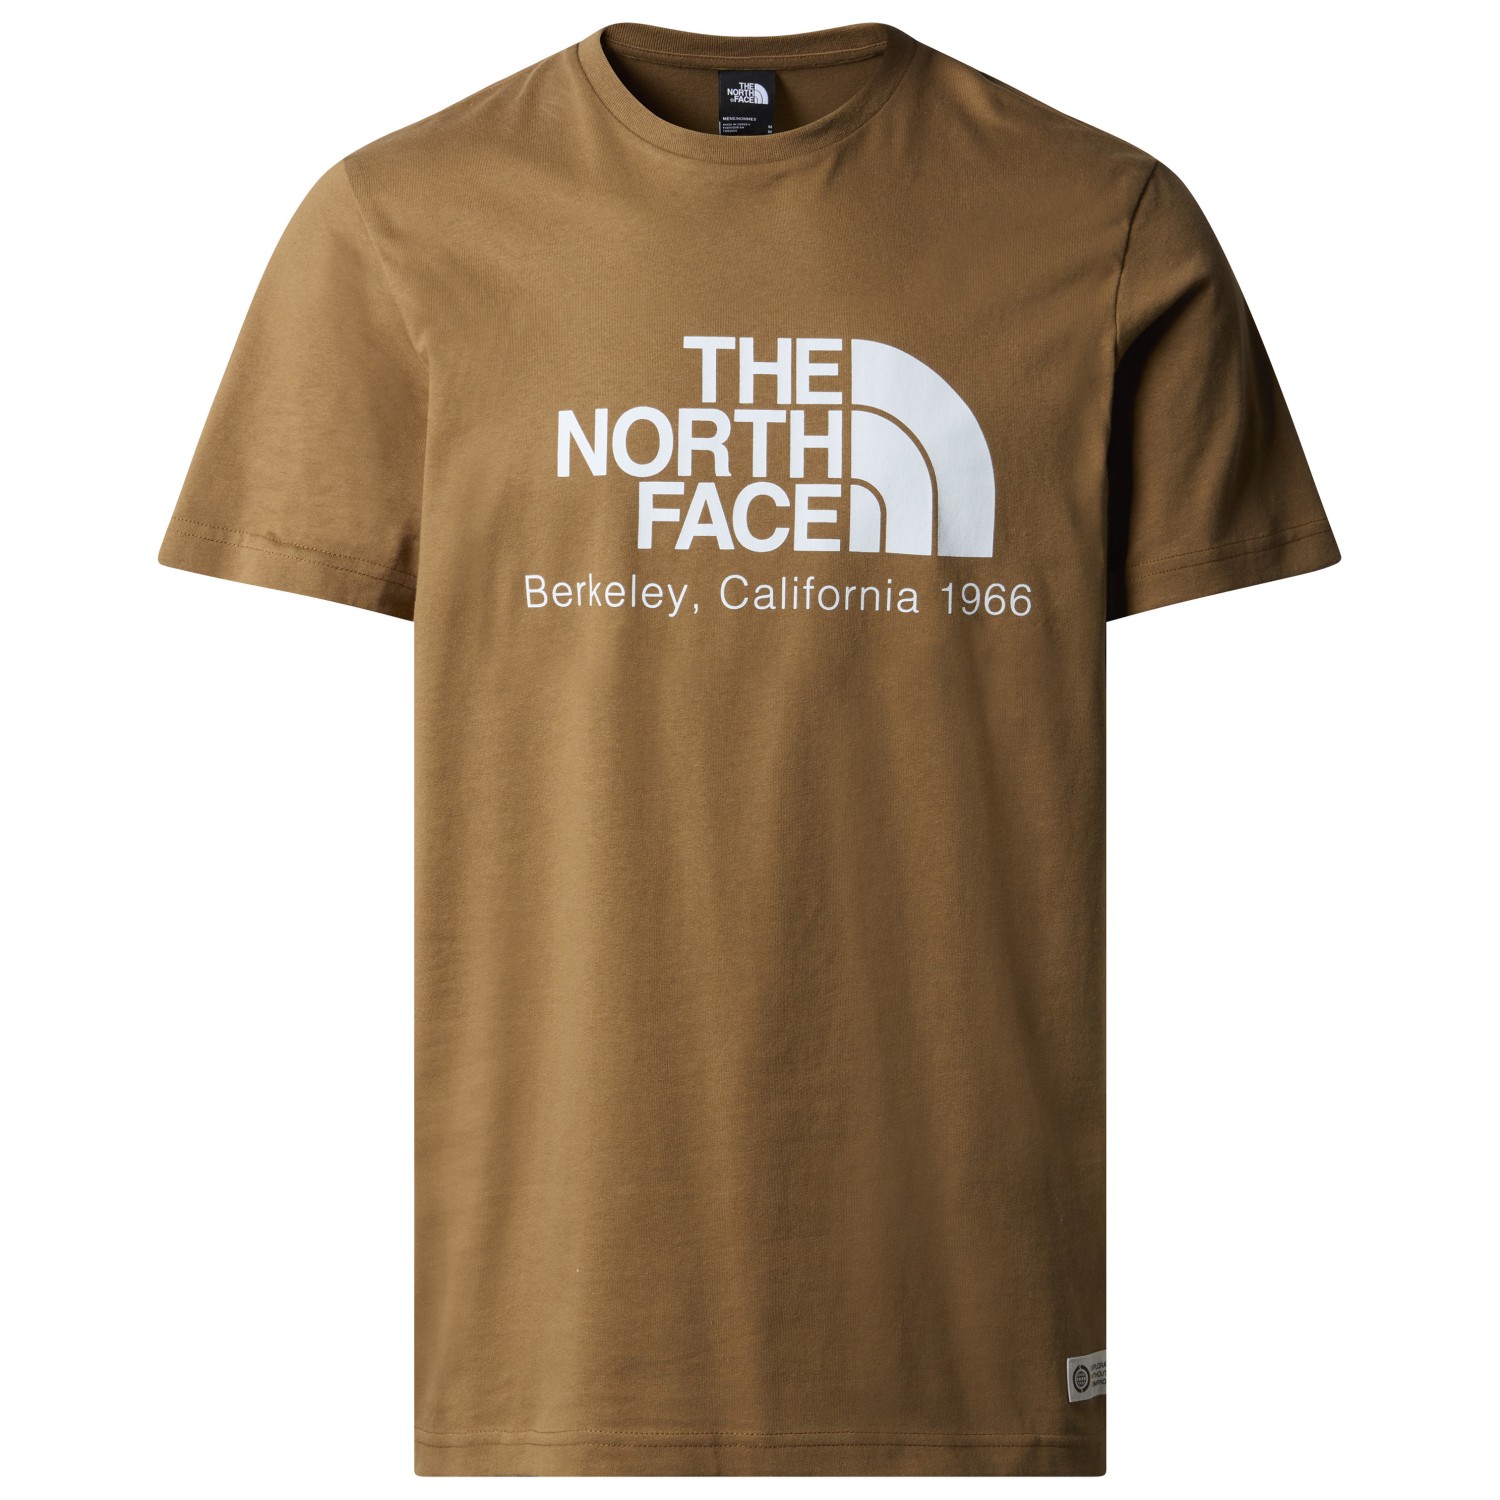 Футболка The North Face Berkeley California S/S Tee In Scrap Mat, цвет Utility Brown футболка the north face the north face s s graphic tee детская